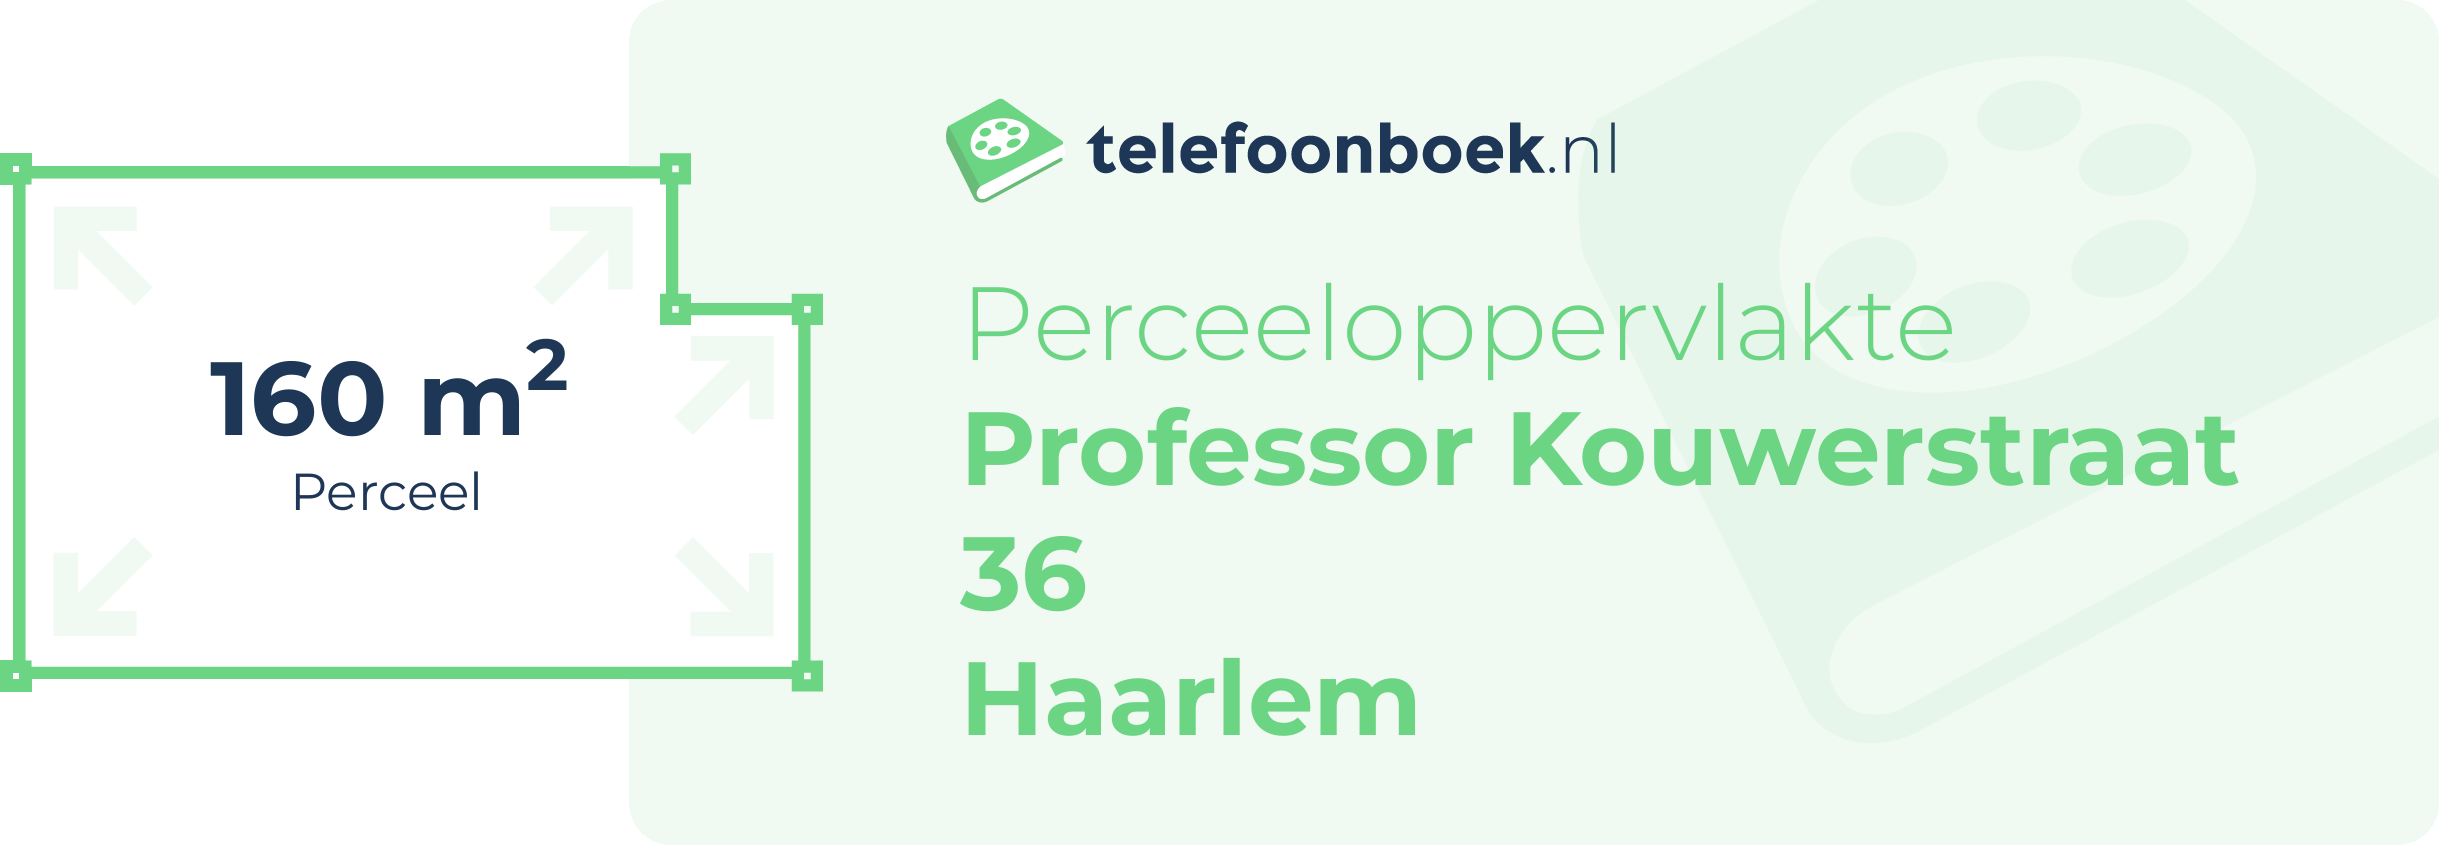 Perceeloppervlakte Professor Kouwerstraat 36 Haarlem